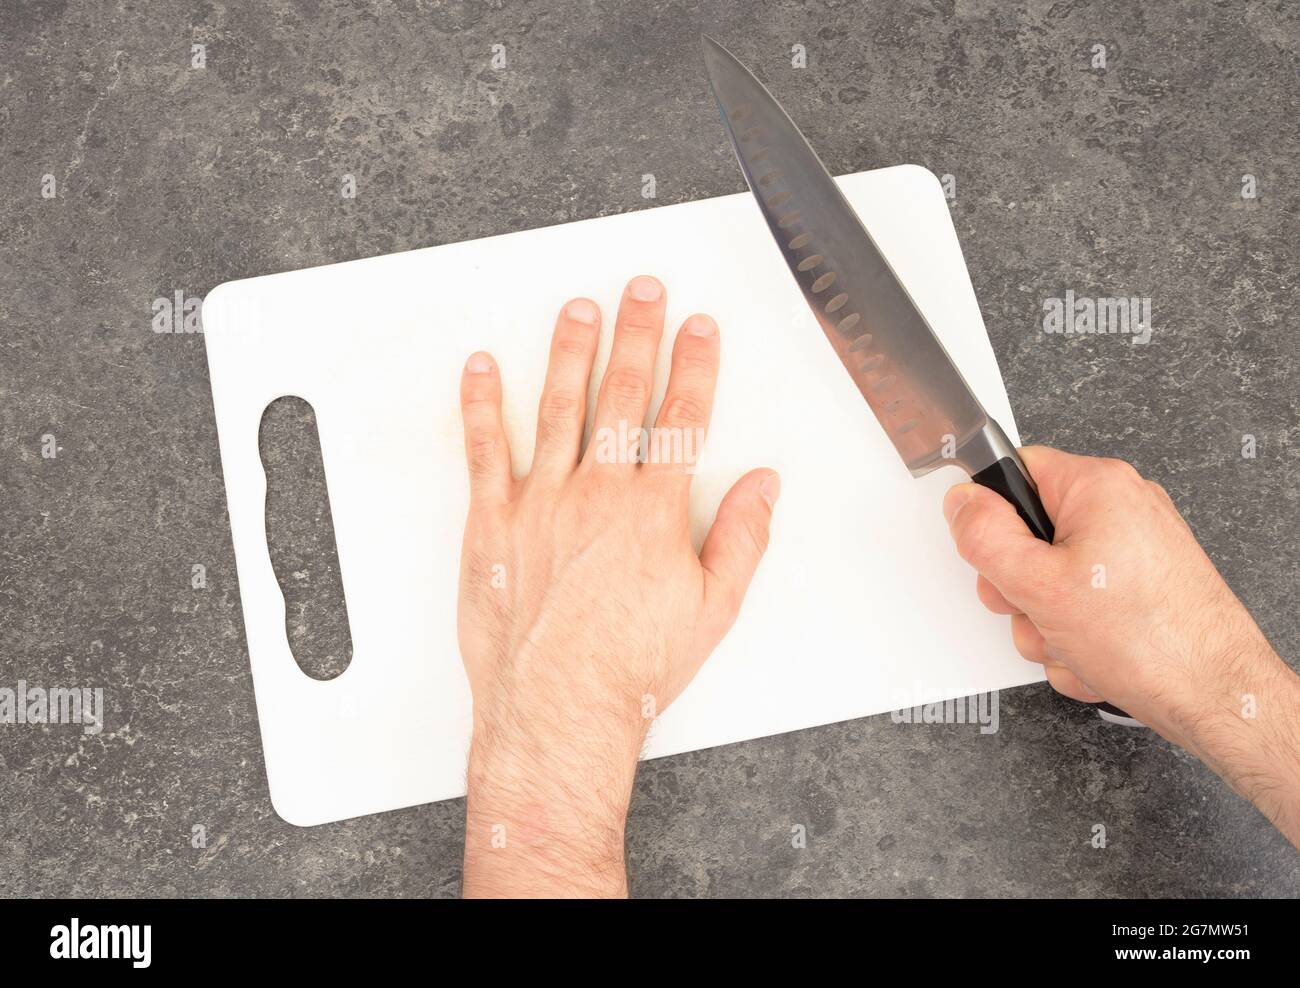 Coupe des doigts avec un couteau - préparation - isolé blanc Banque D'Images